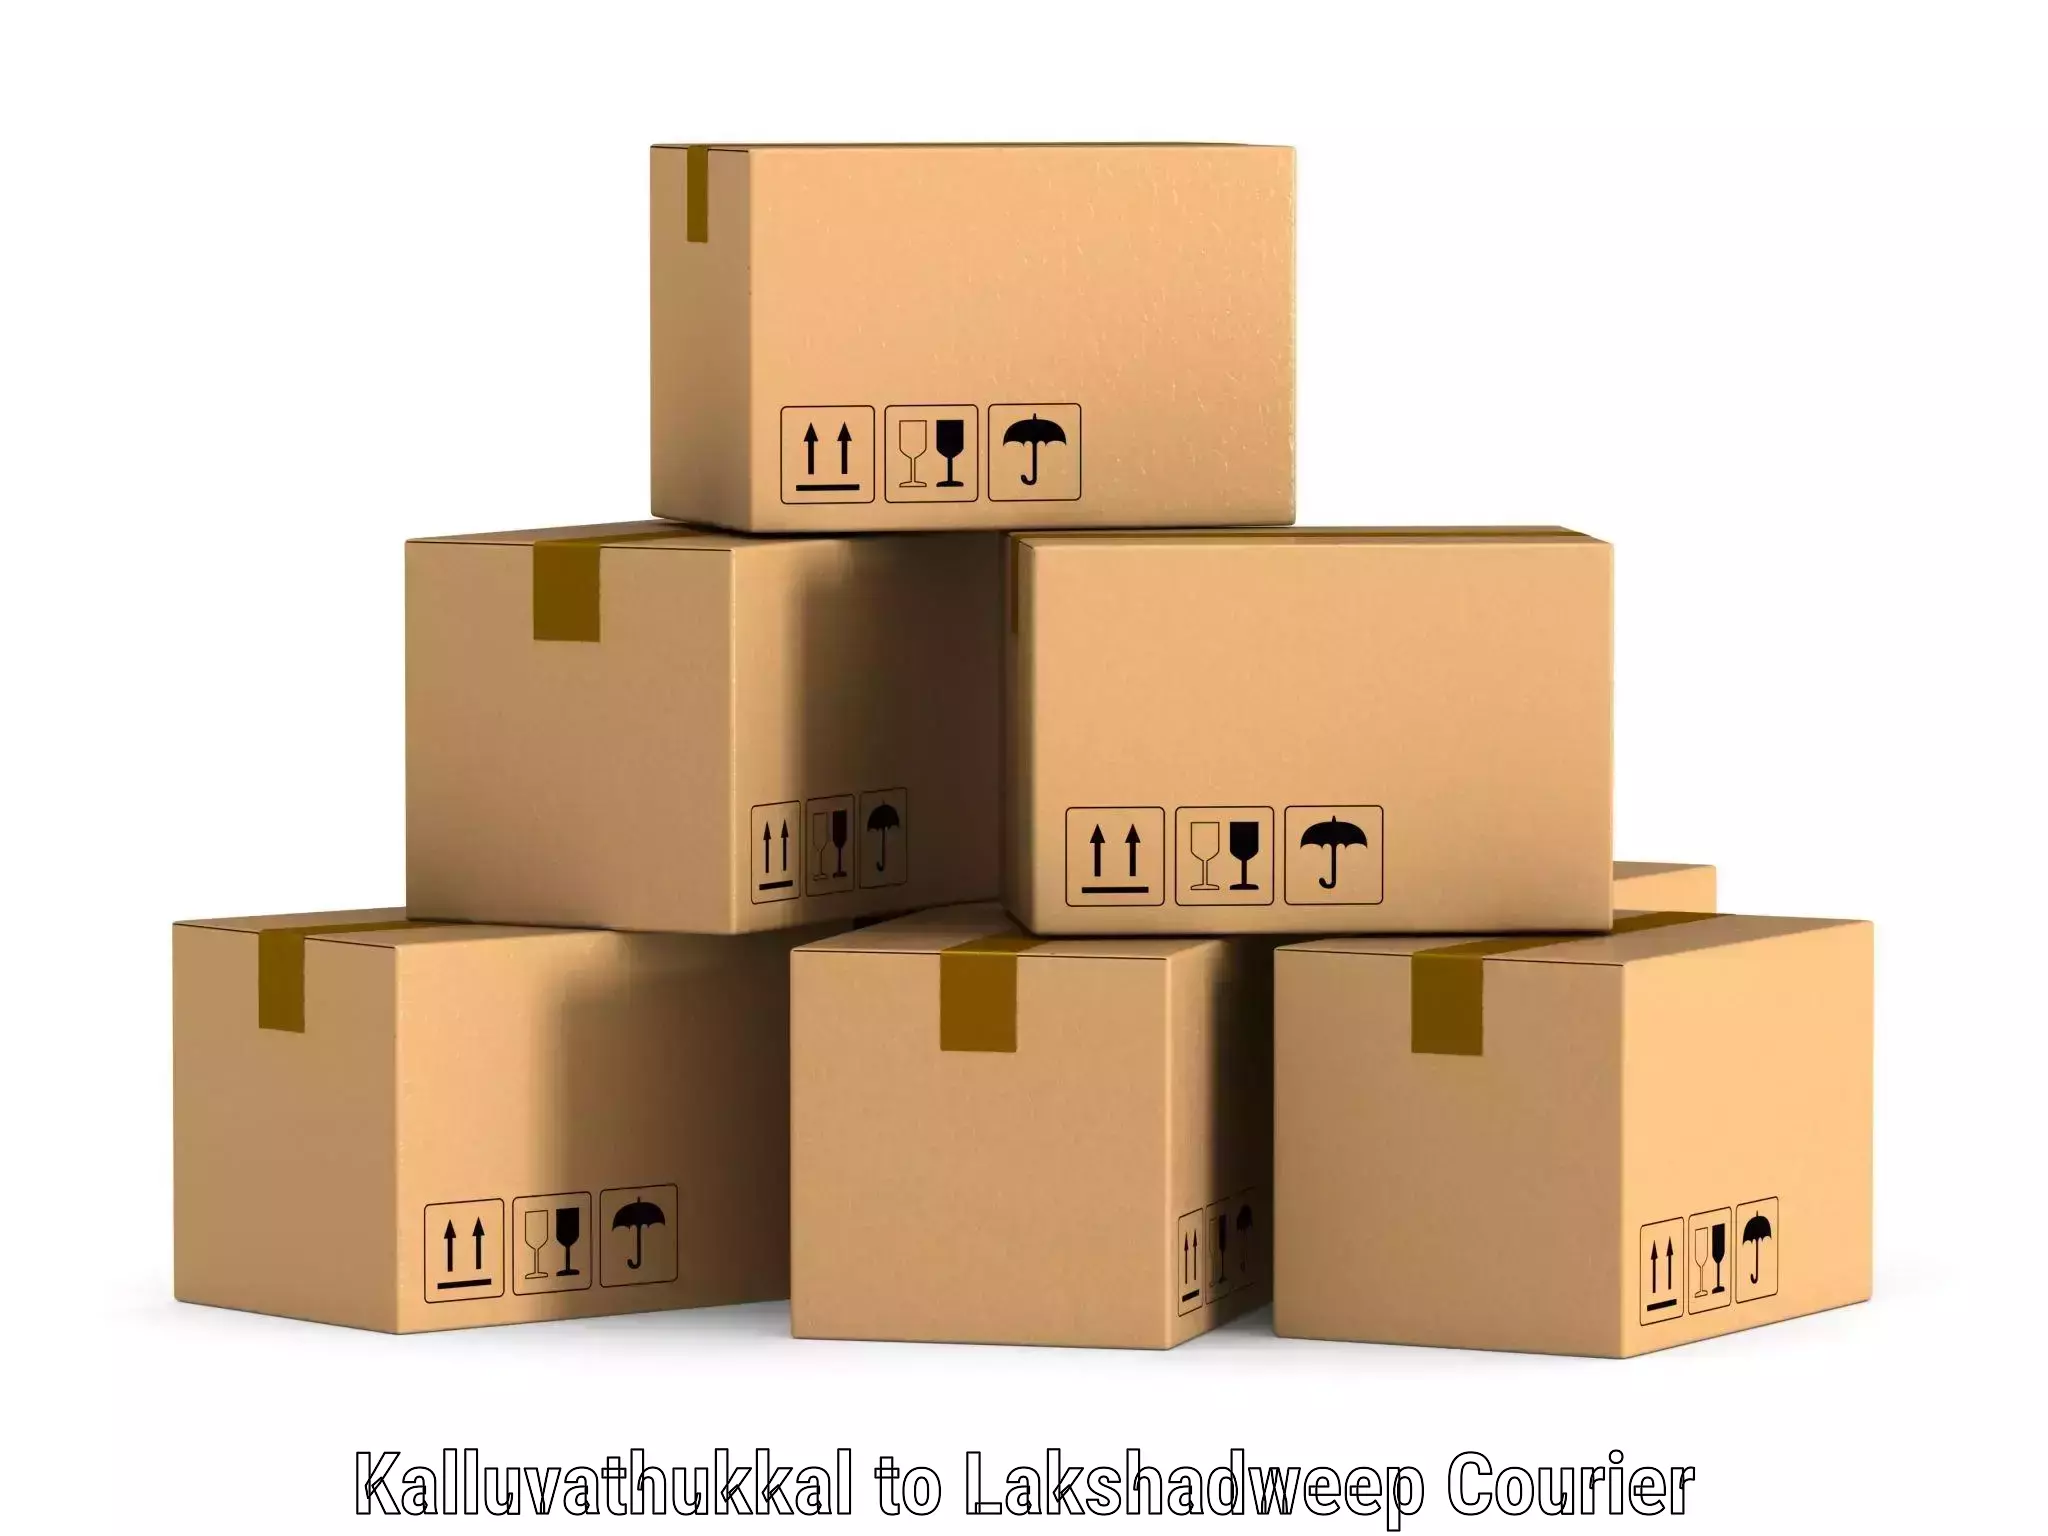 Business shipping needs Kalluvathukkal to Lakshadweep